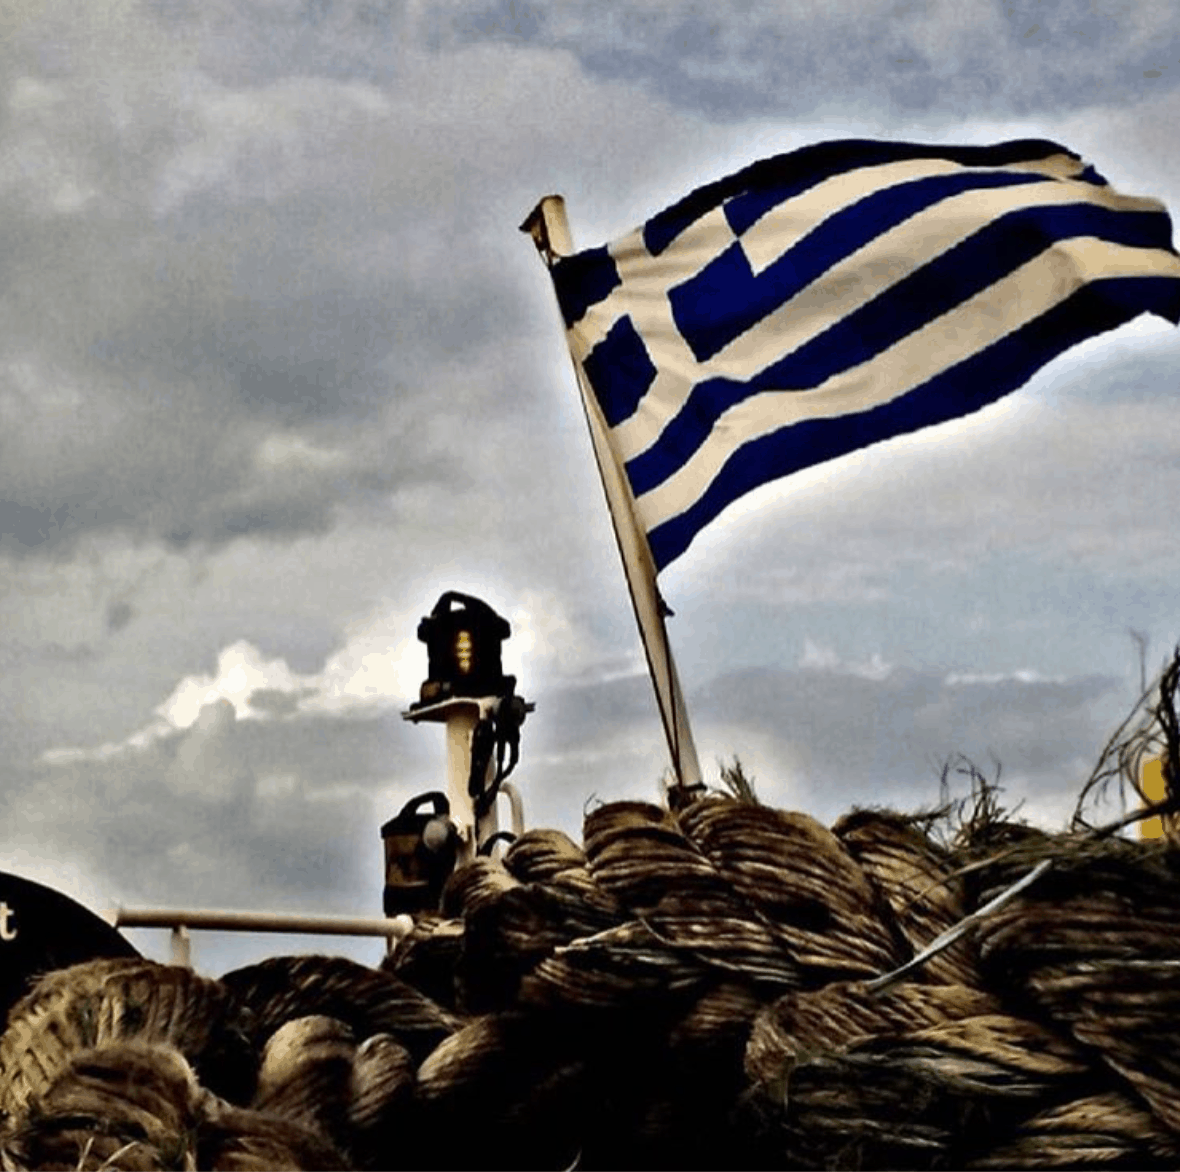 5. Greek flag onboard. Credits to @georgia_knk